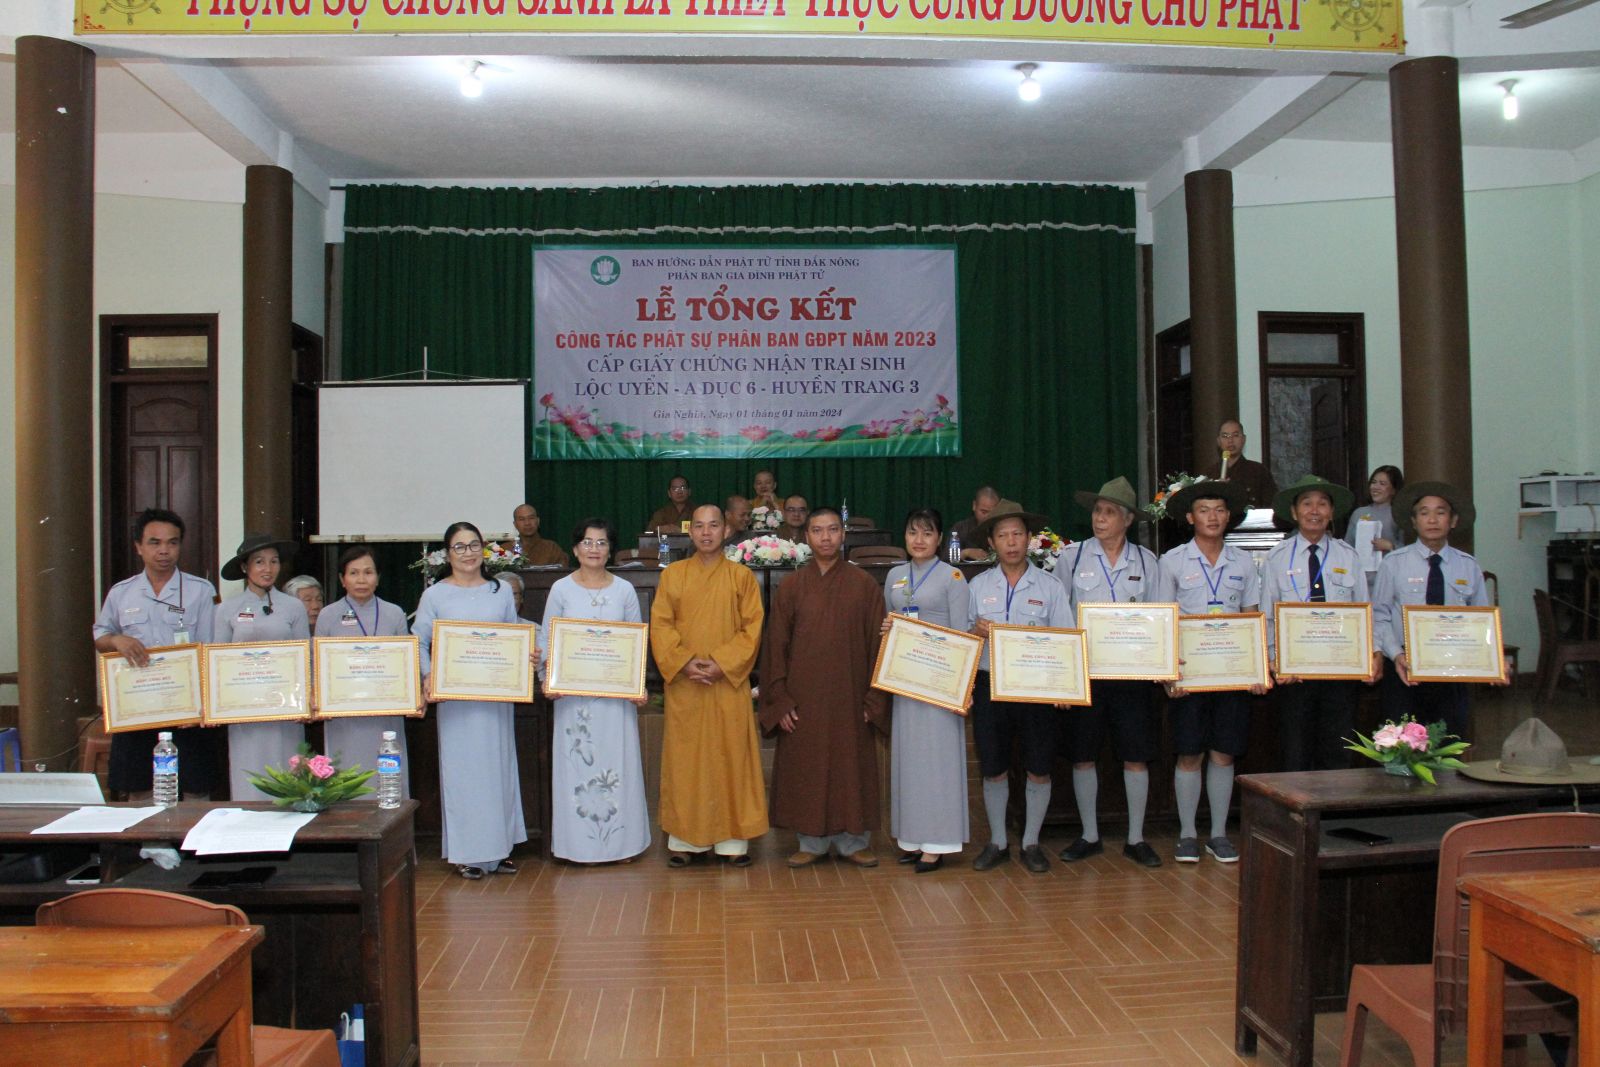 Phân ban Gia Đình Phật Tử tỉnh Đắk Nông tổng kết phật sự năm 2023 và kết khóa Liên trại Huyền Trang 3 - A Dục - Lộc Uyển 6